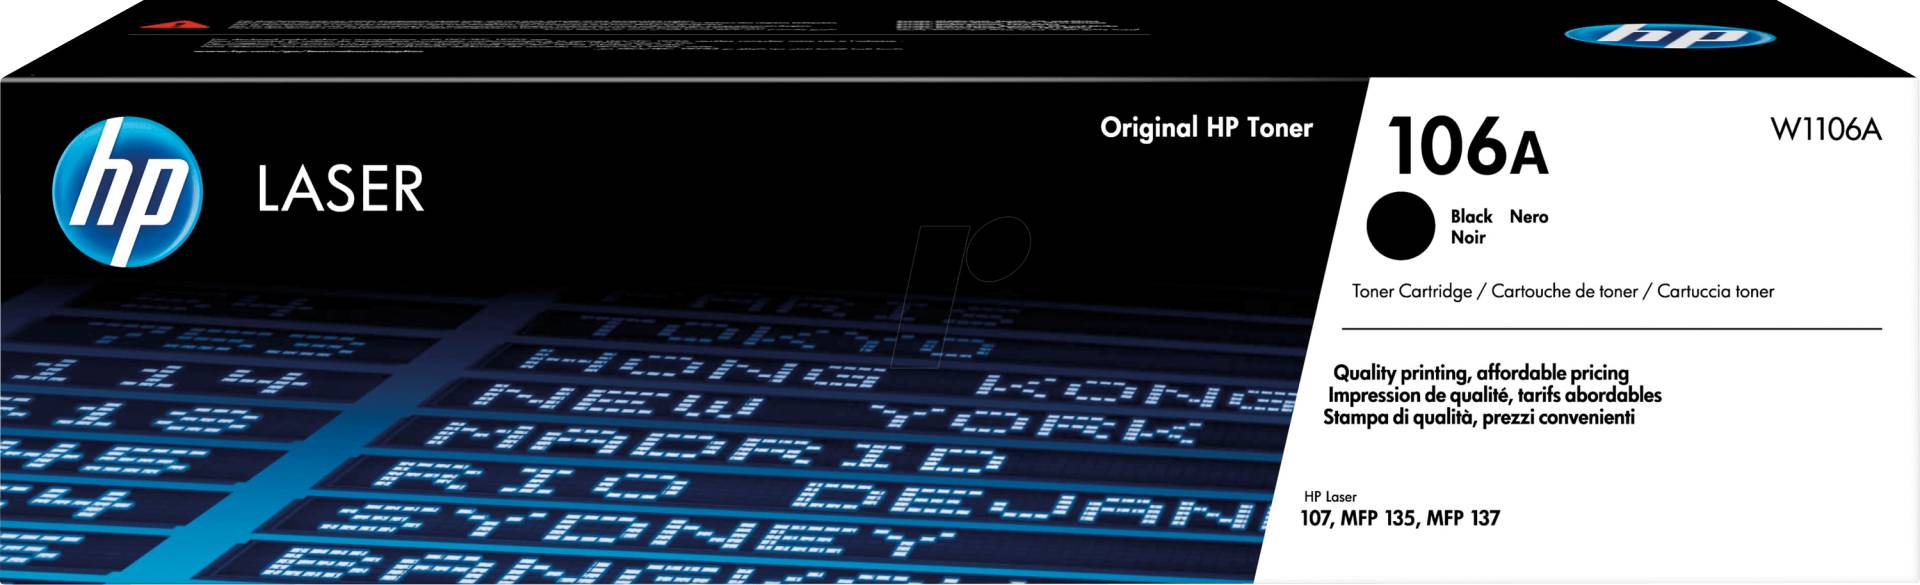 TONER W1106 - HP-Toner, schwarz, 106A, original von Hewlett Packard